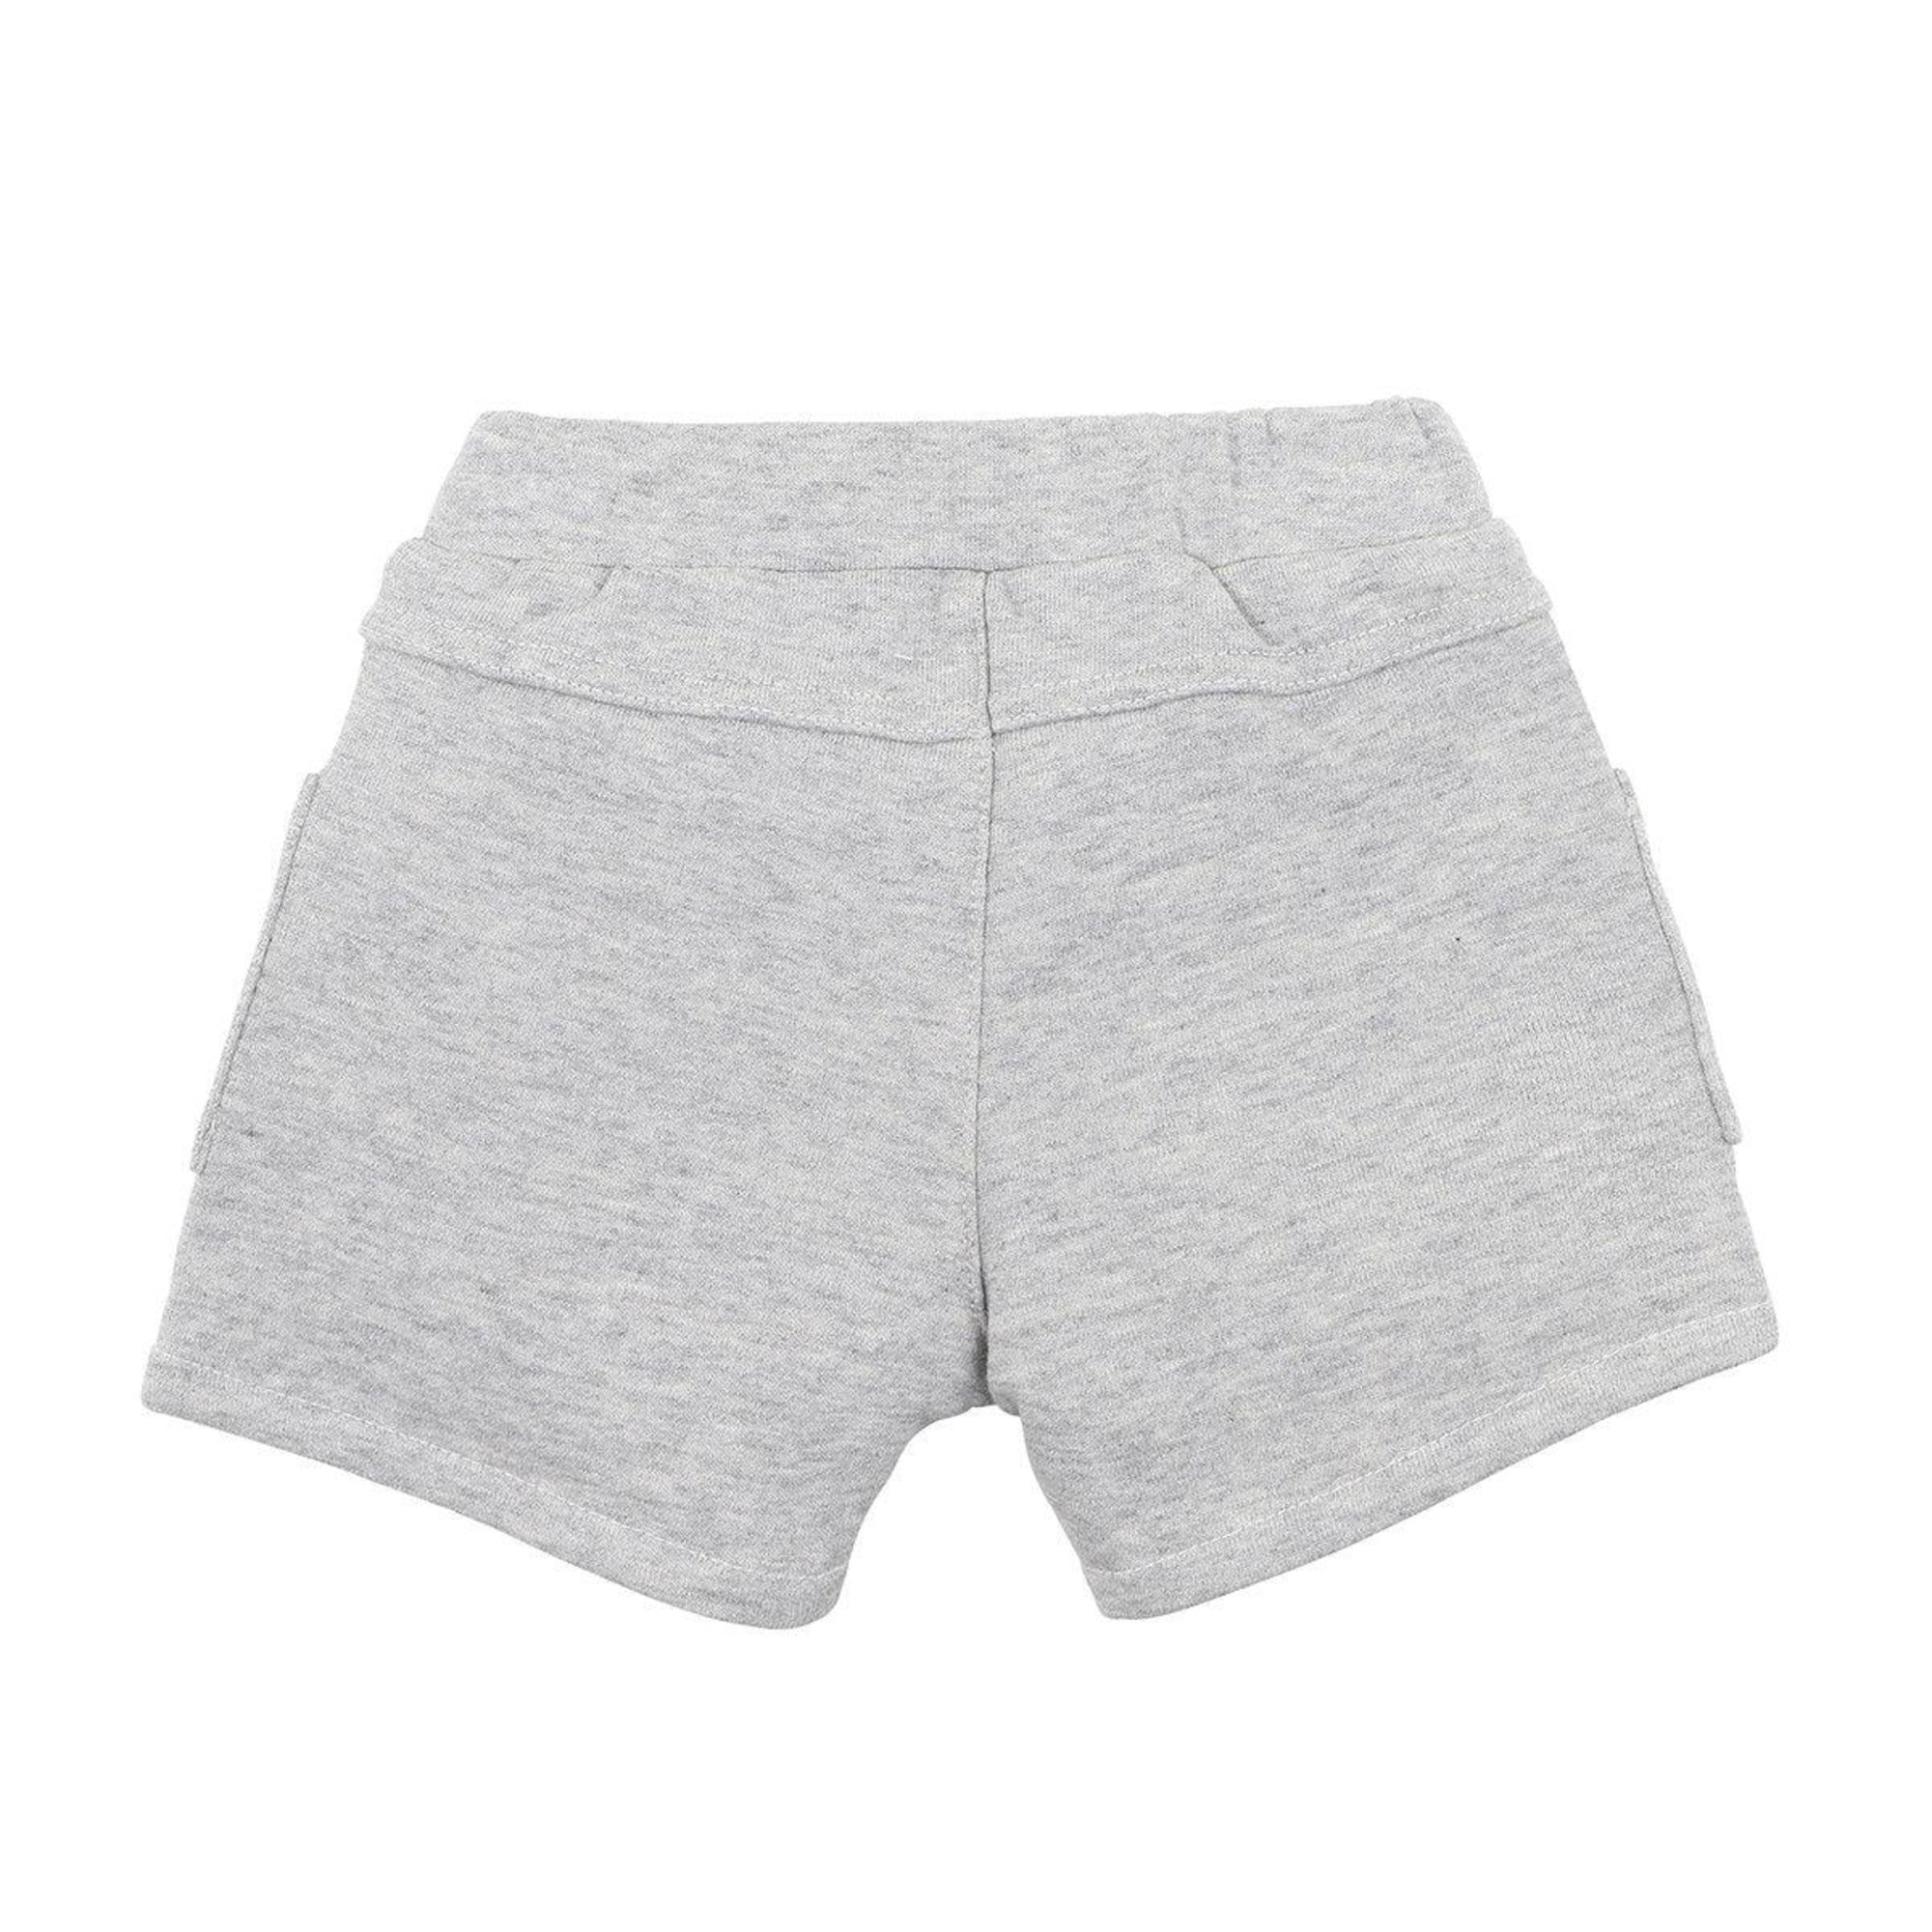 Cotton Terry Cargo Shorts - Grey - boys shorts - Bebe by Minihaha